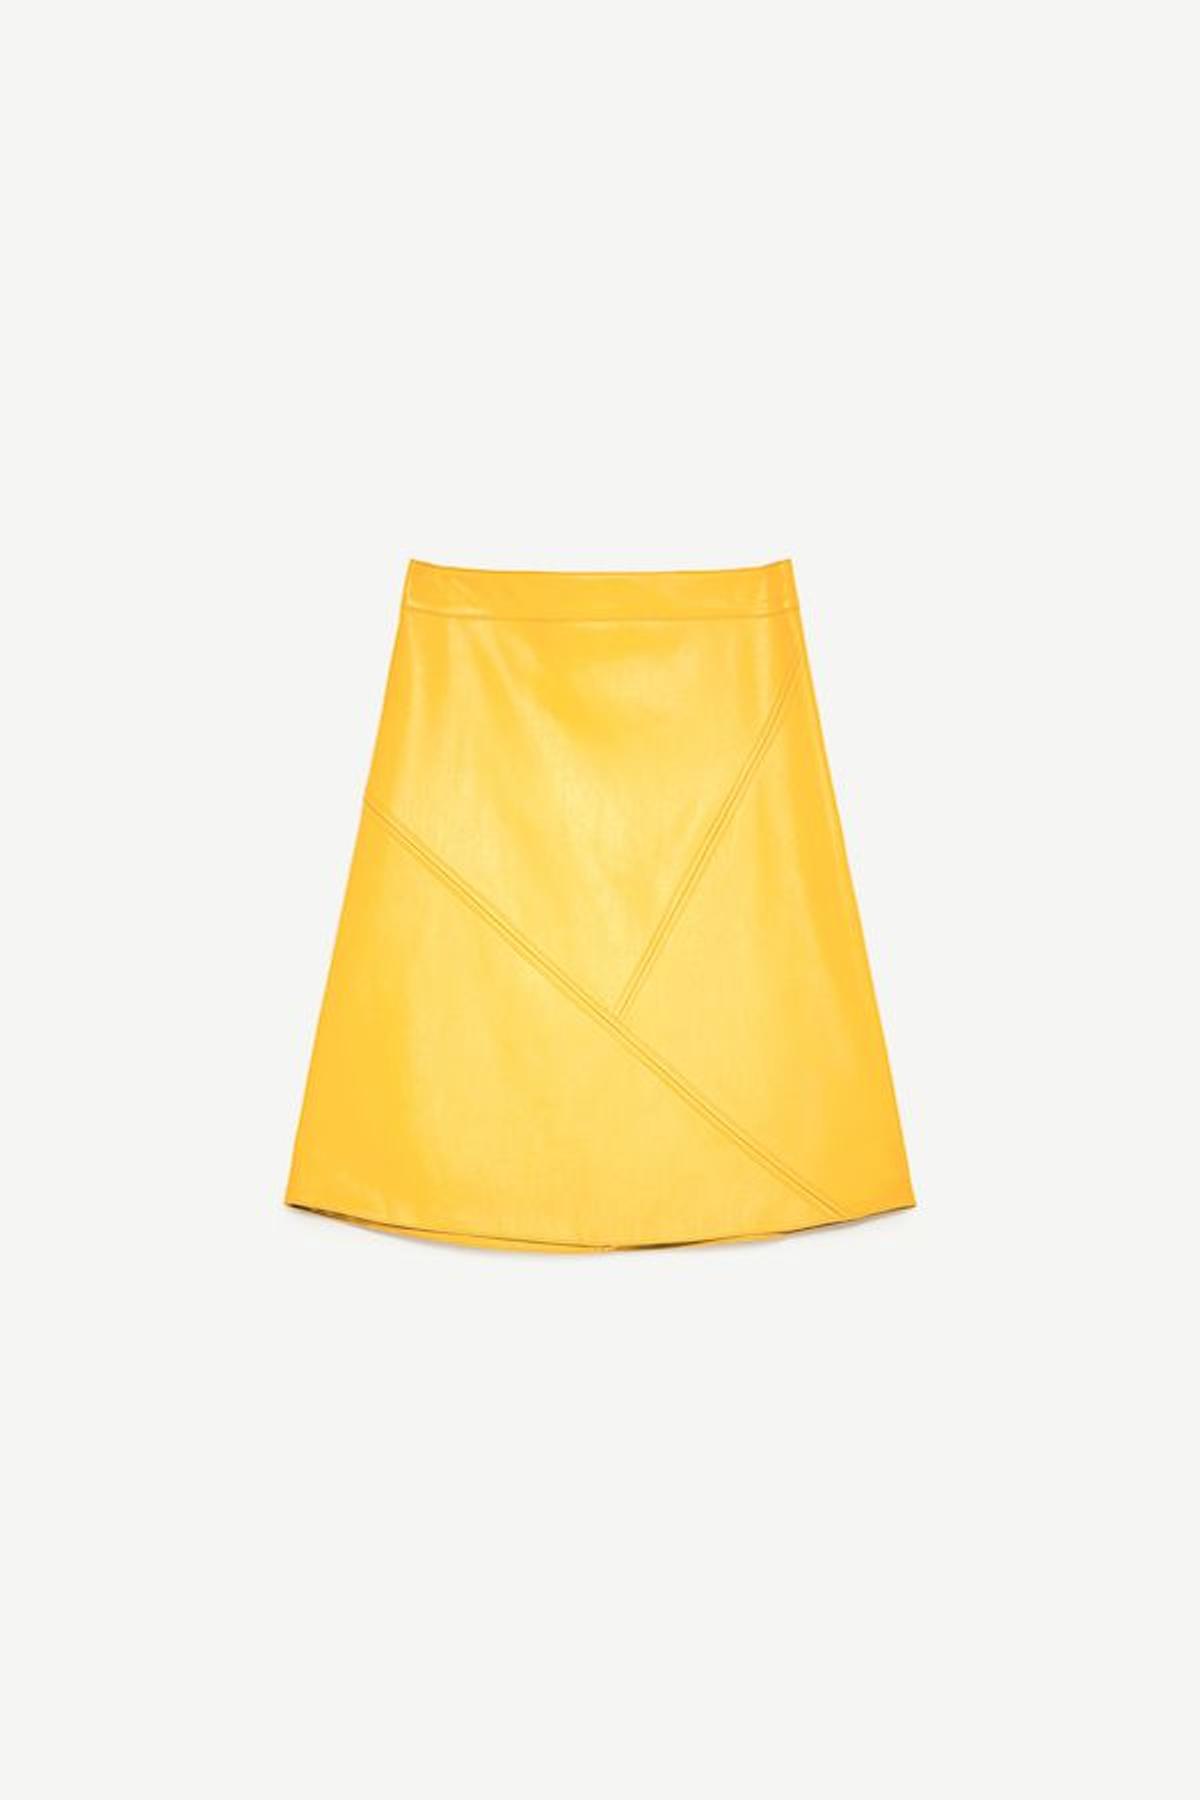 Minifalda de piel amarilla de Zara